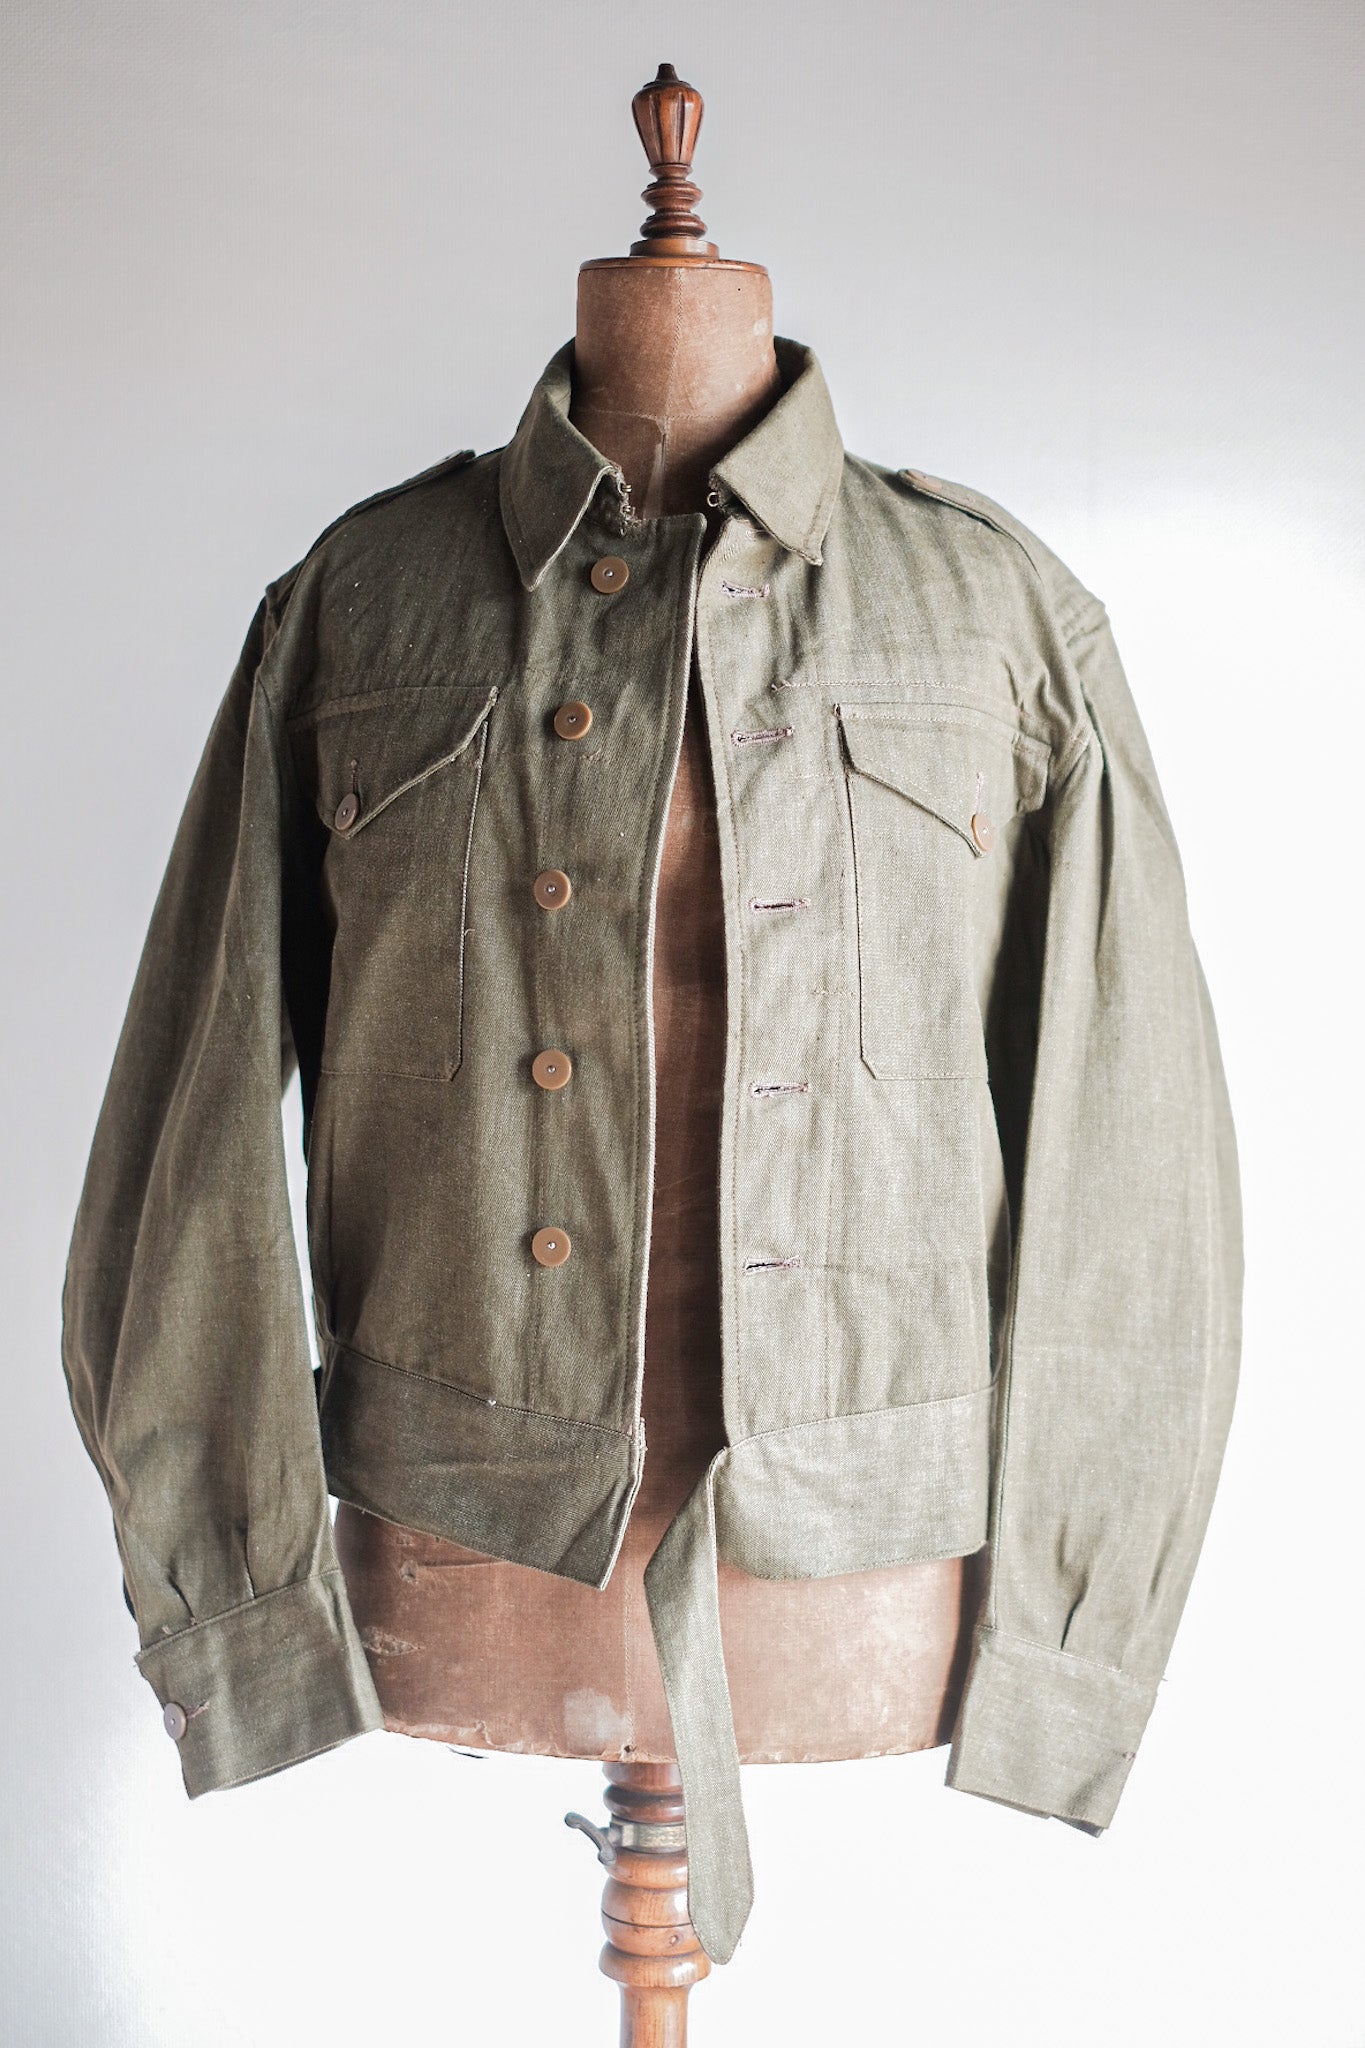 [〜50年代]英國軍隊綠色牛仔布打扮夾克尺寸。7“死股”